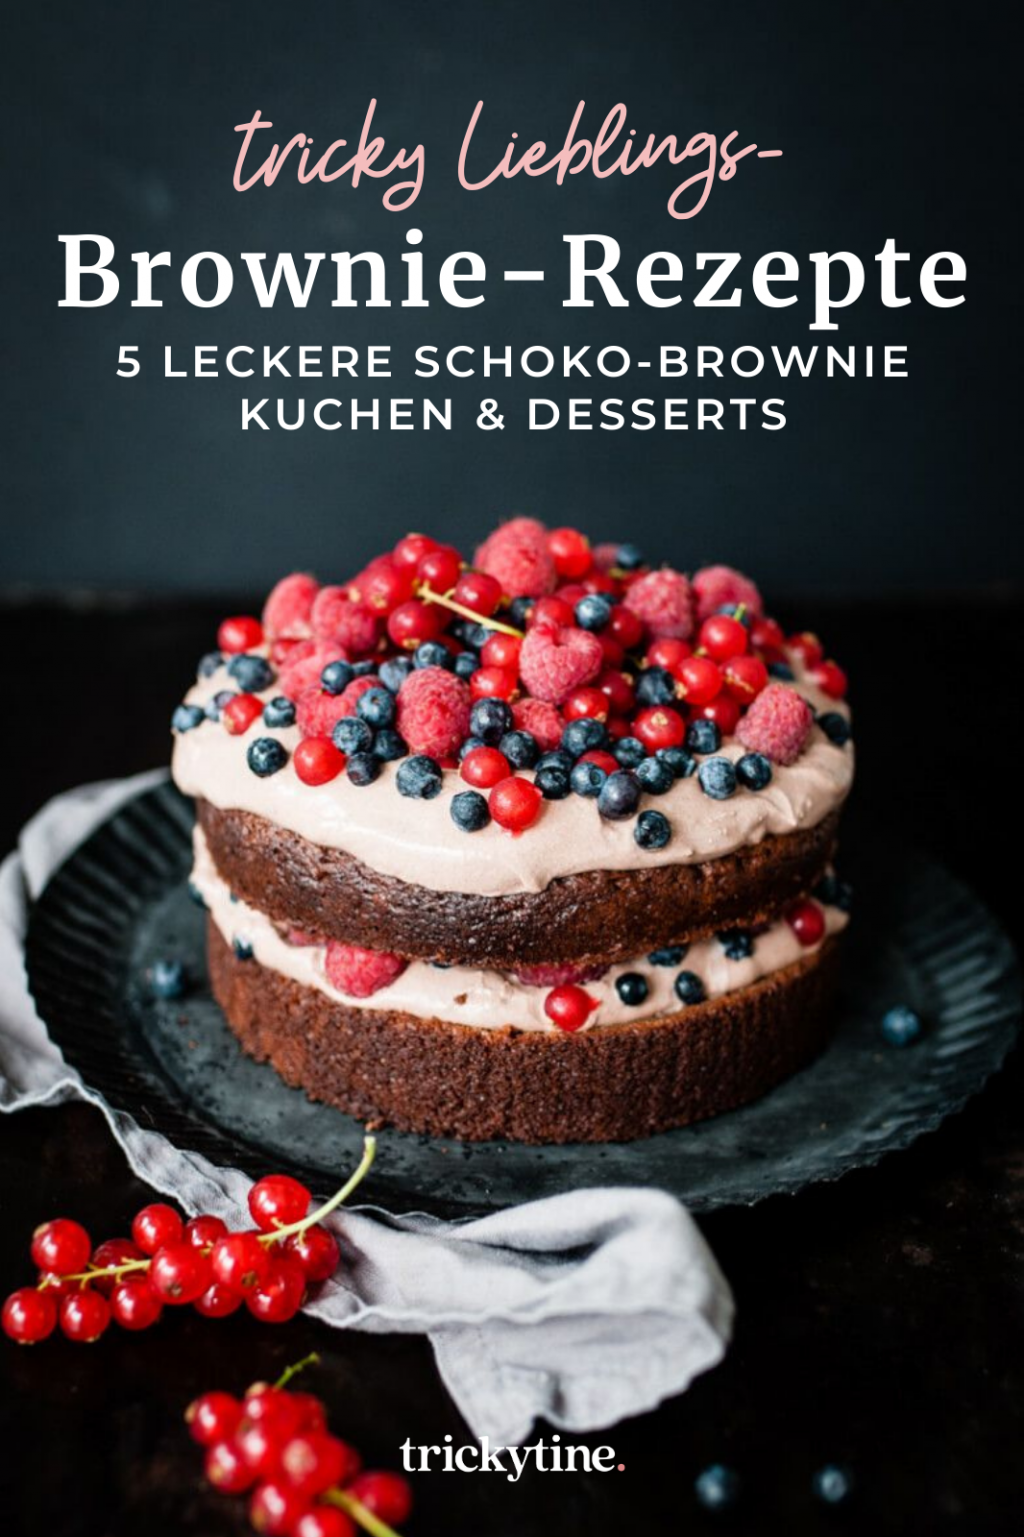 Browie-Rezepte, Brownie Torte mit Beeren